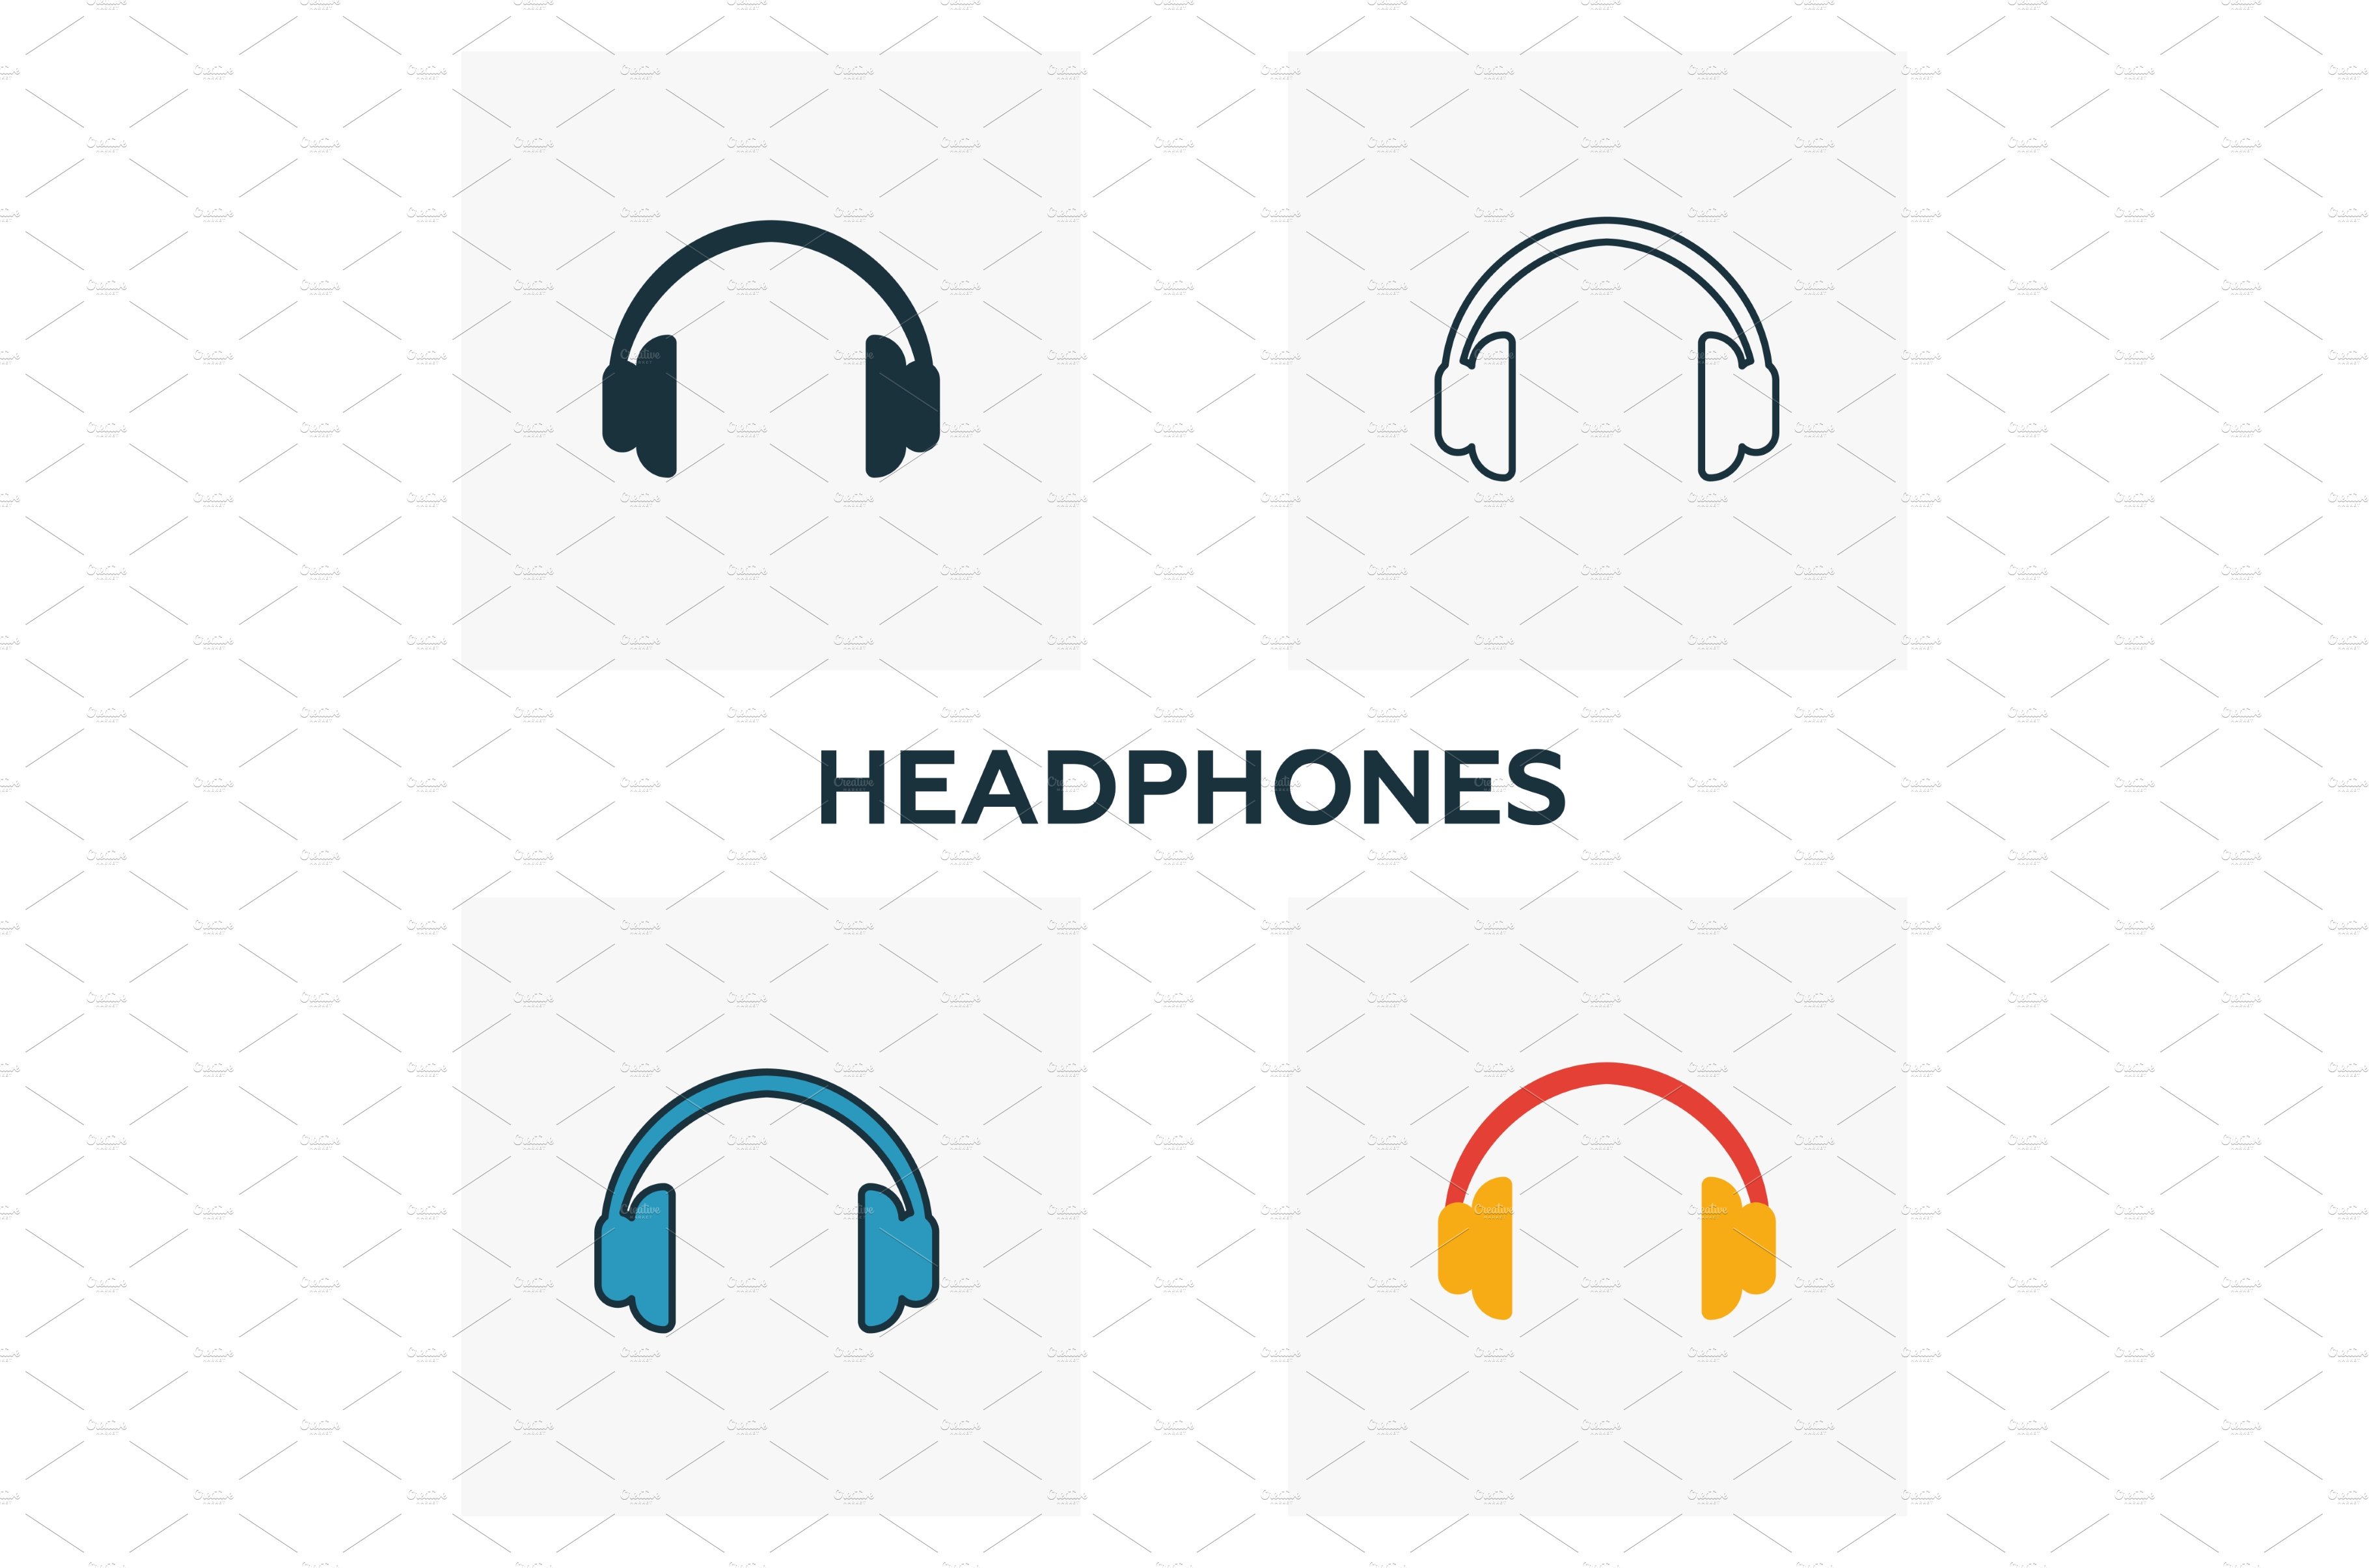 Headphones icon set. cover image.